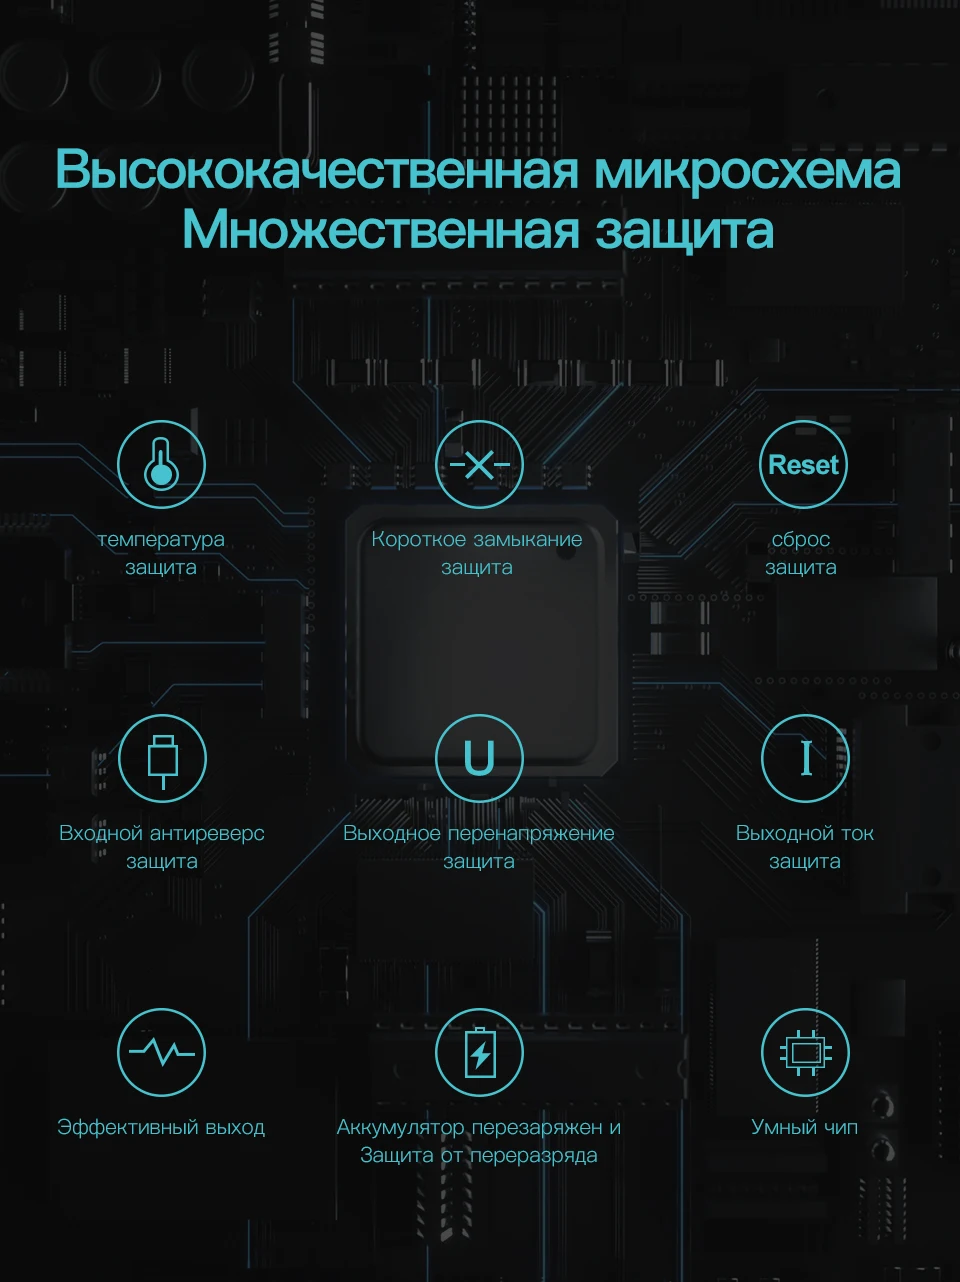 KUULAA Power Bank 10000 мАч Портативное зарядное устройство 10000 мАч Dual USB Mini Внешнее зарядное устройство для Xiaomi Mi 8 PoverBank